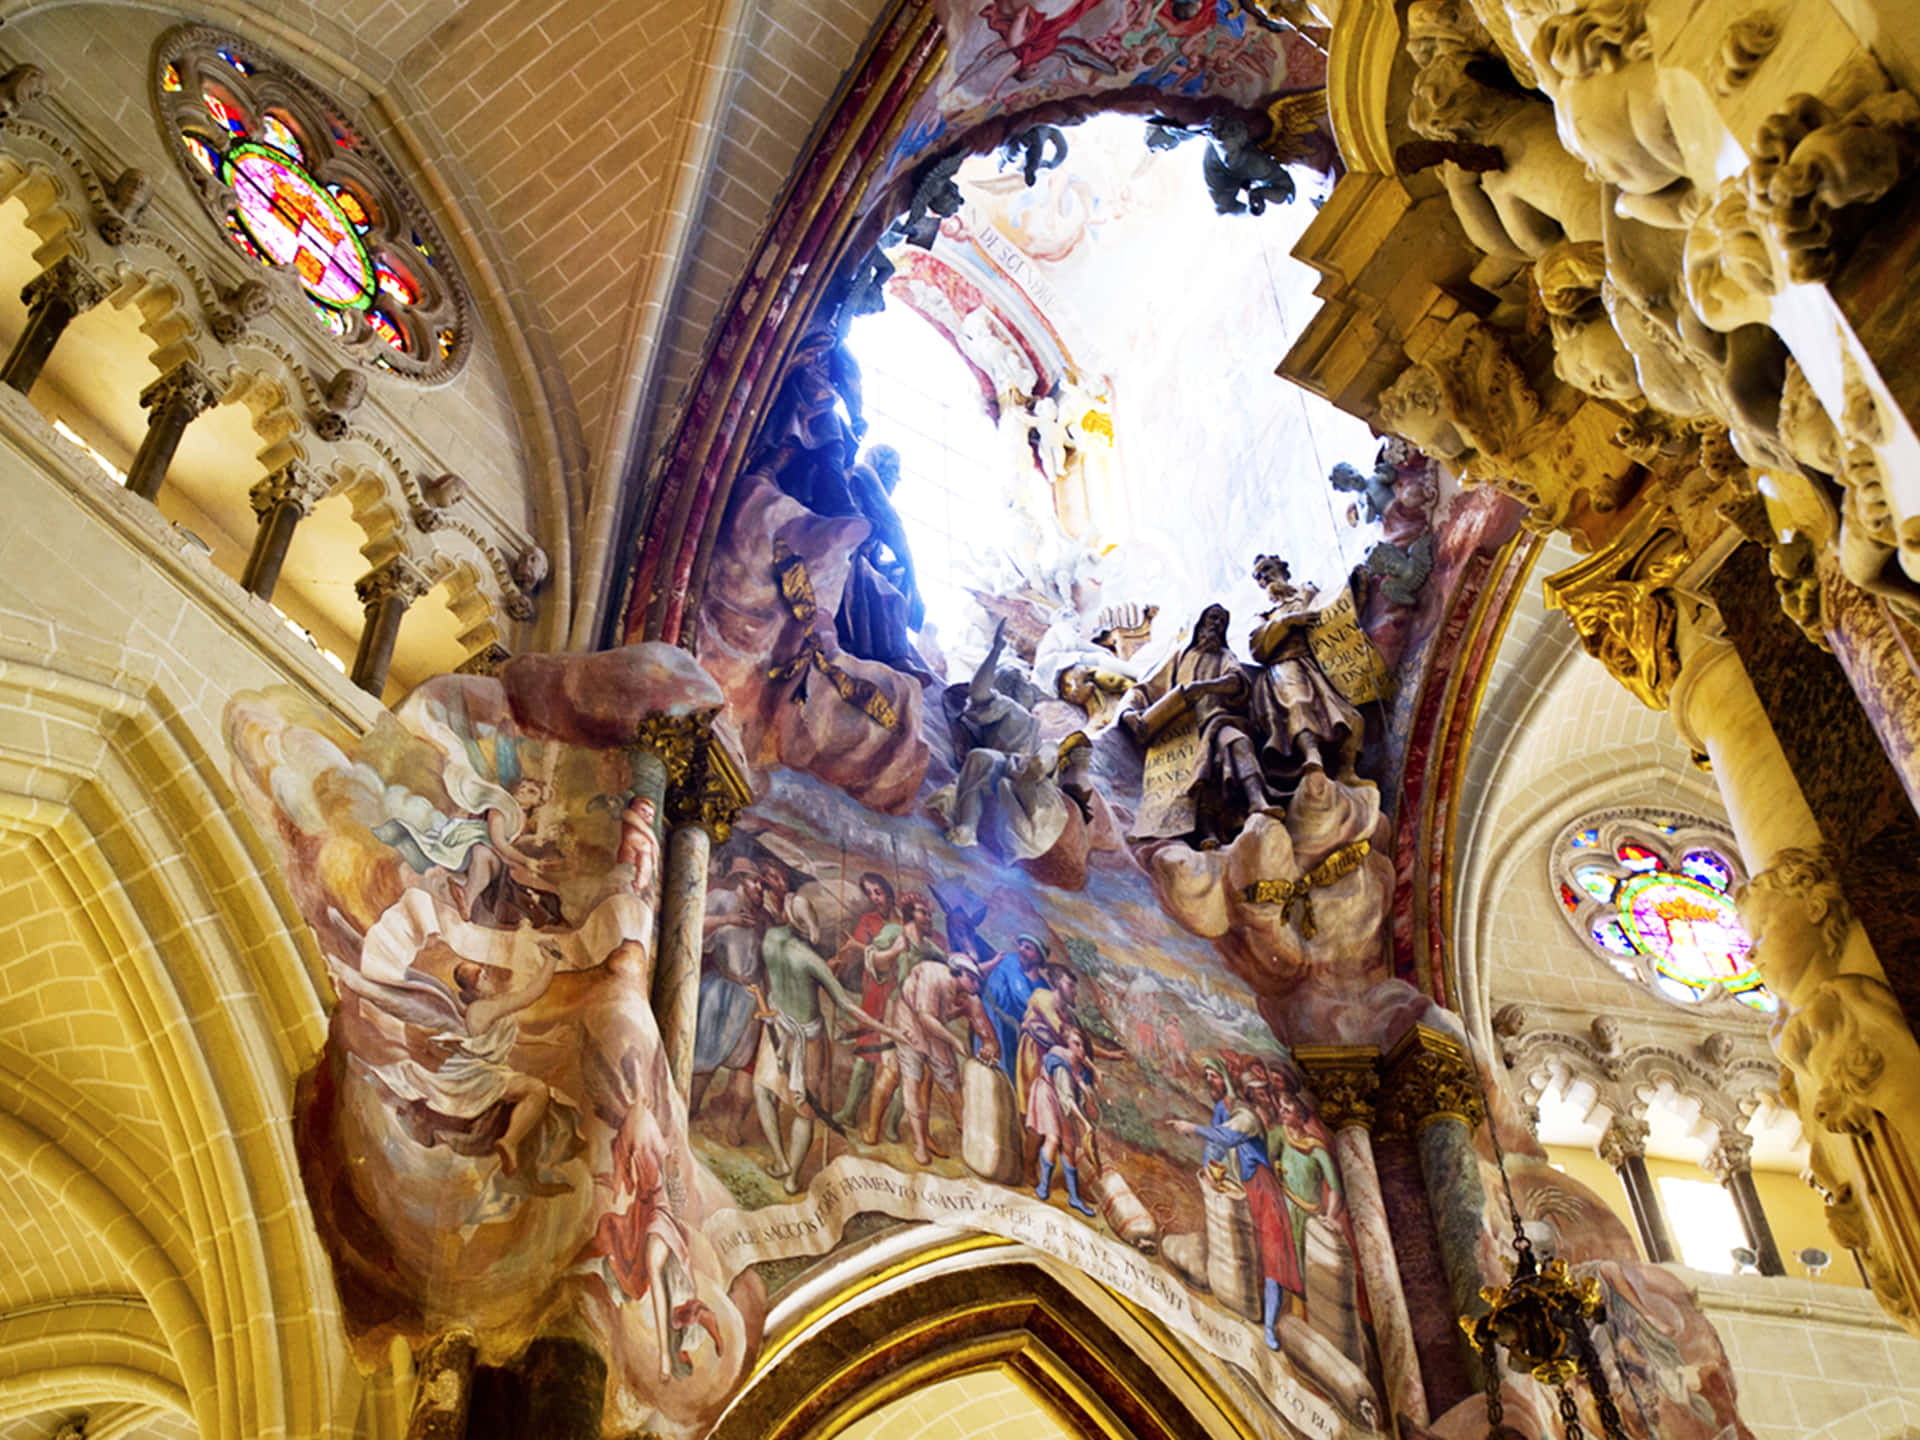 Soffittomeravigliosamente Decorato Cattedrale Di Toledo. Sfondo